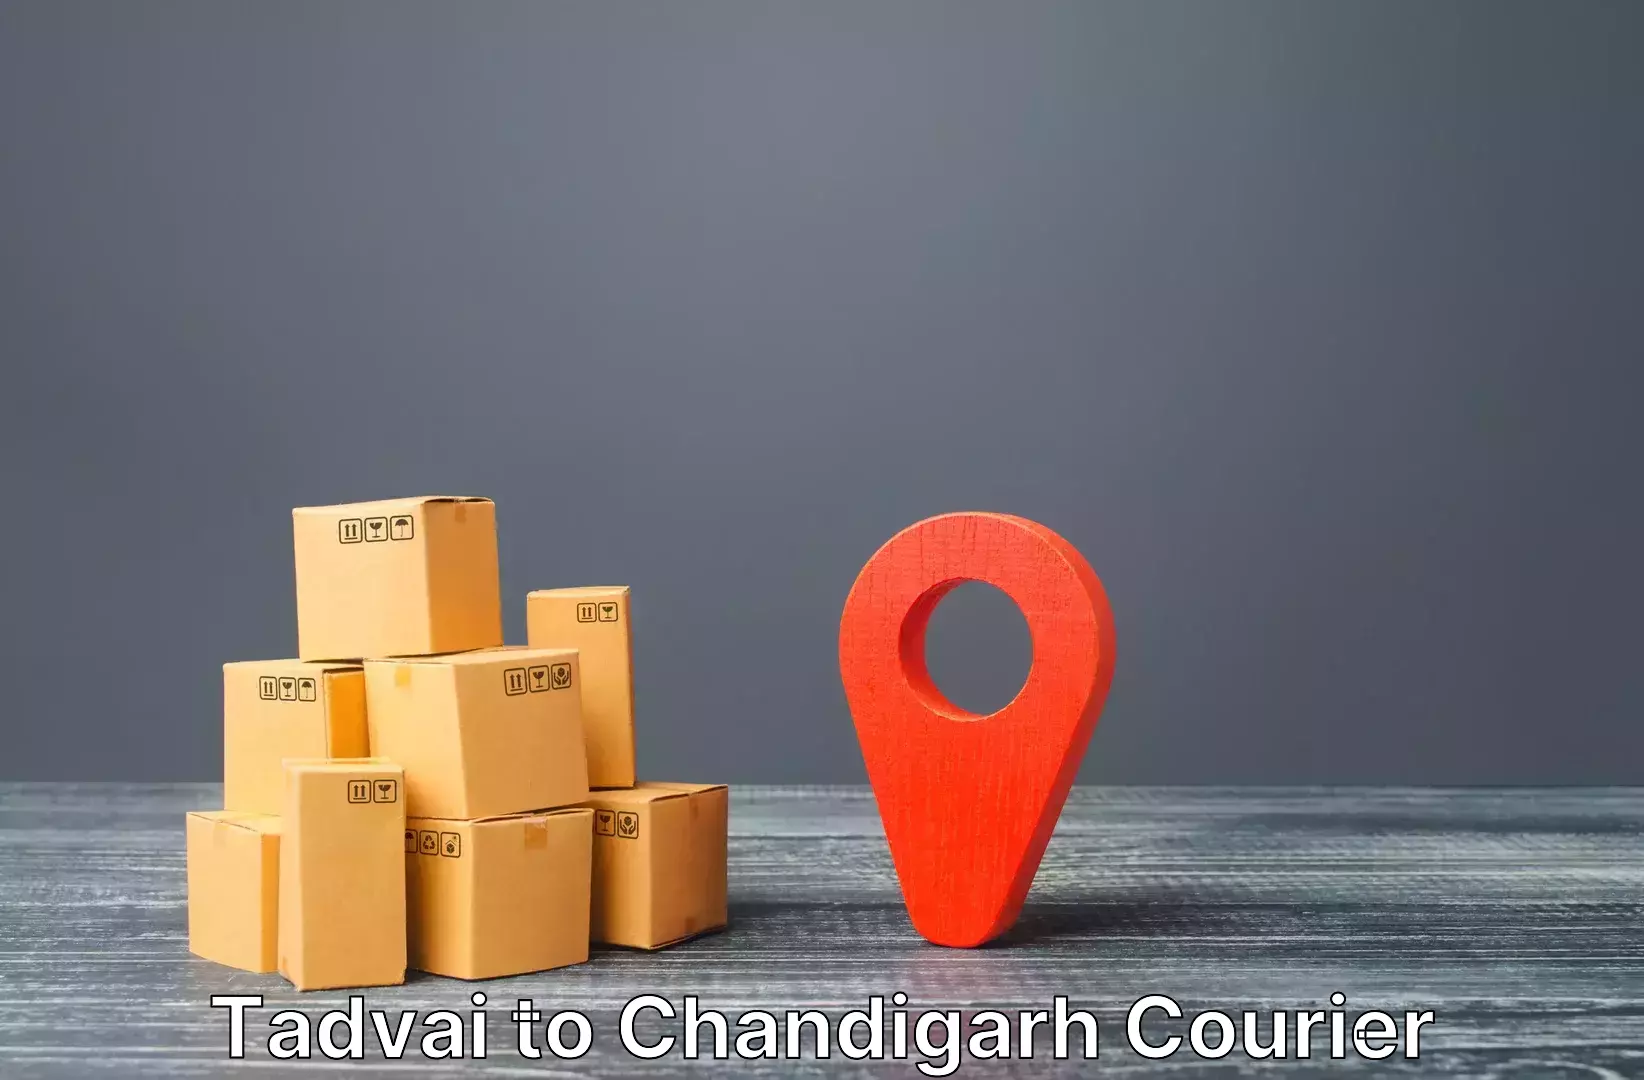 Luggage transport operations Tadvai to Chandigarh